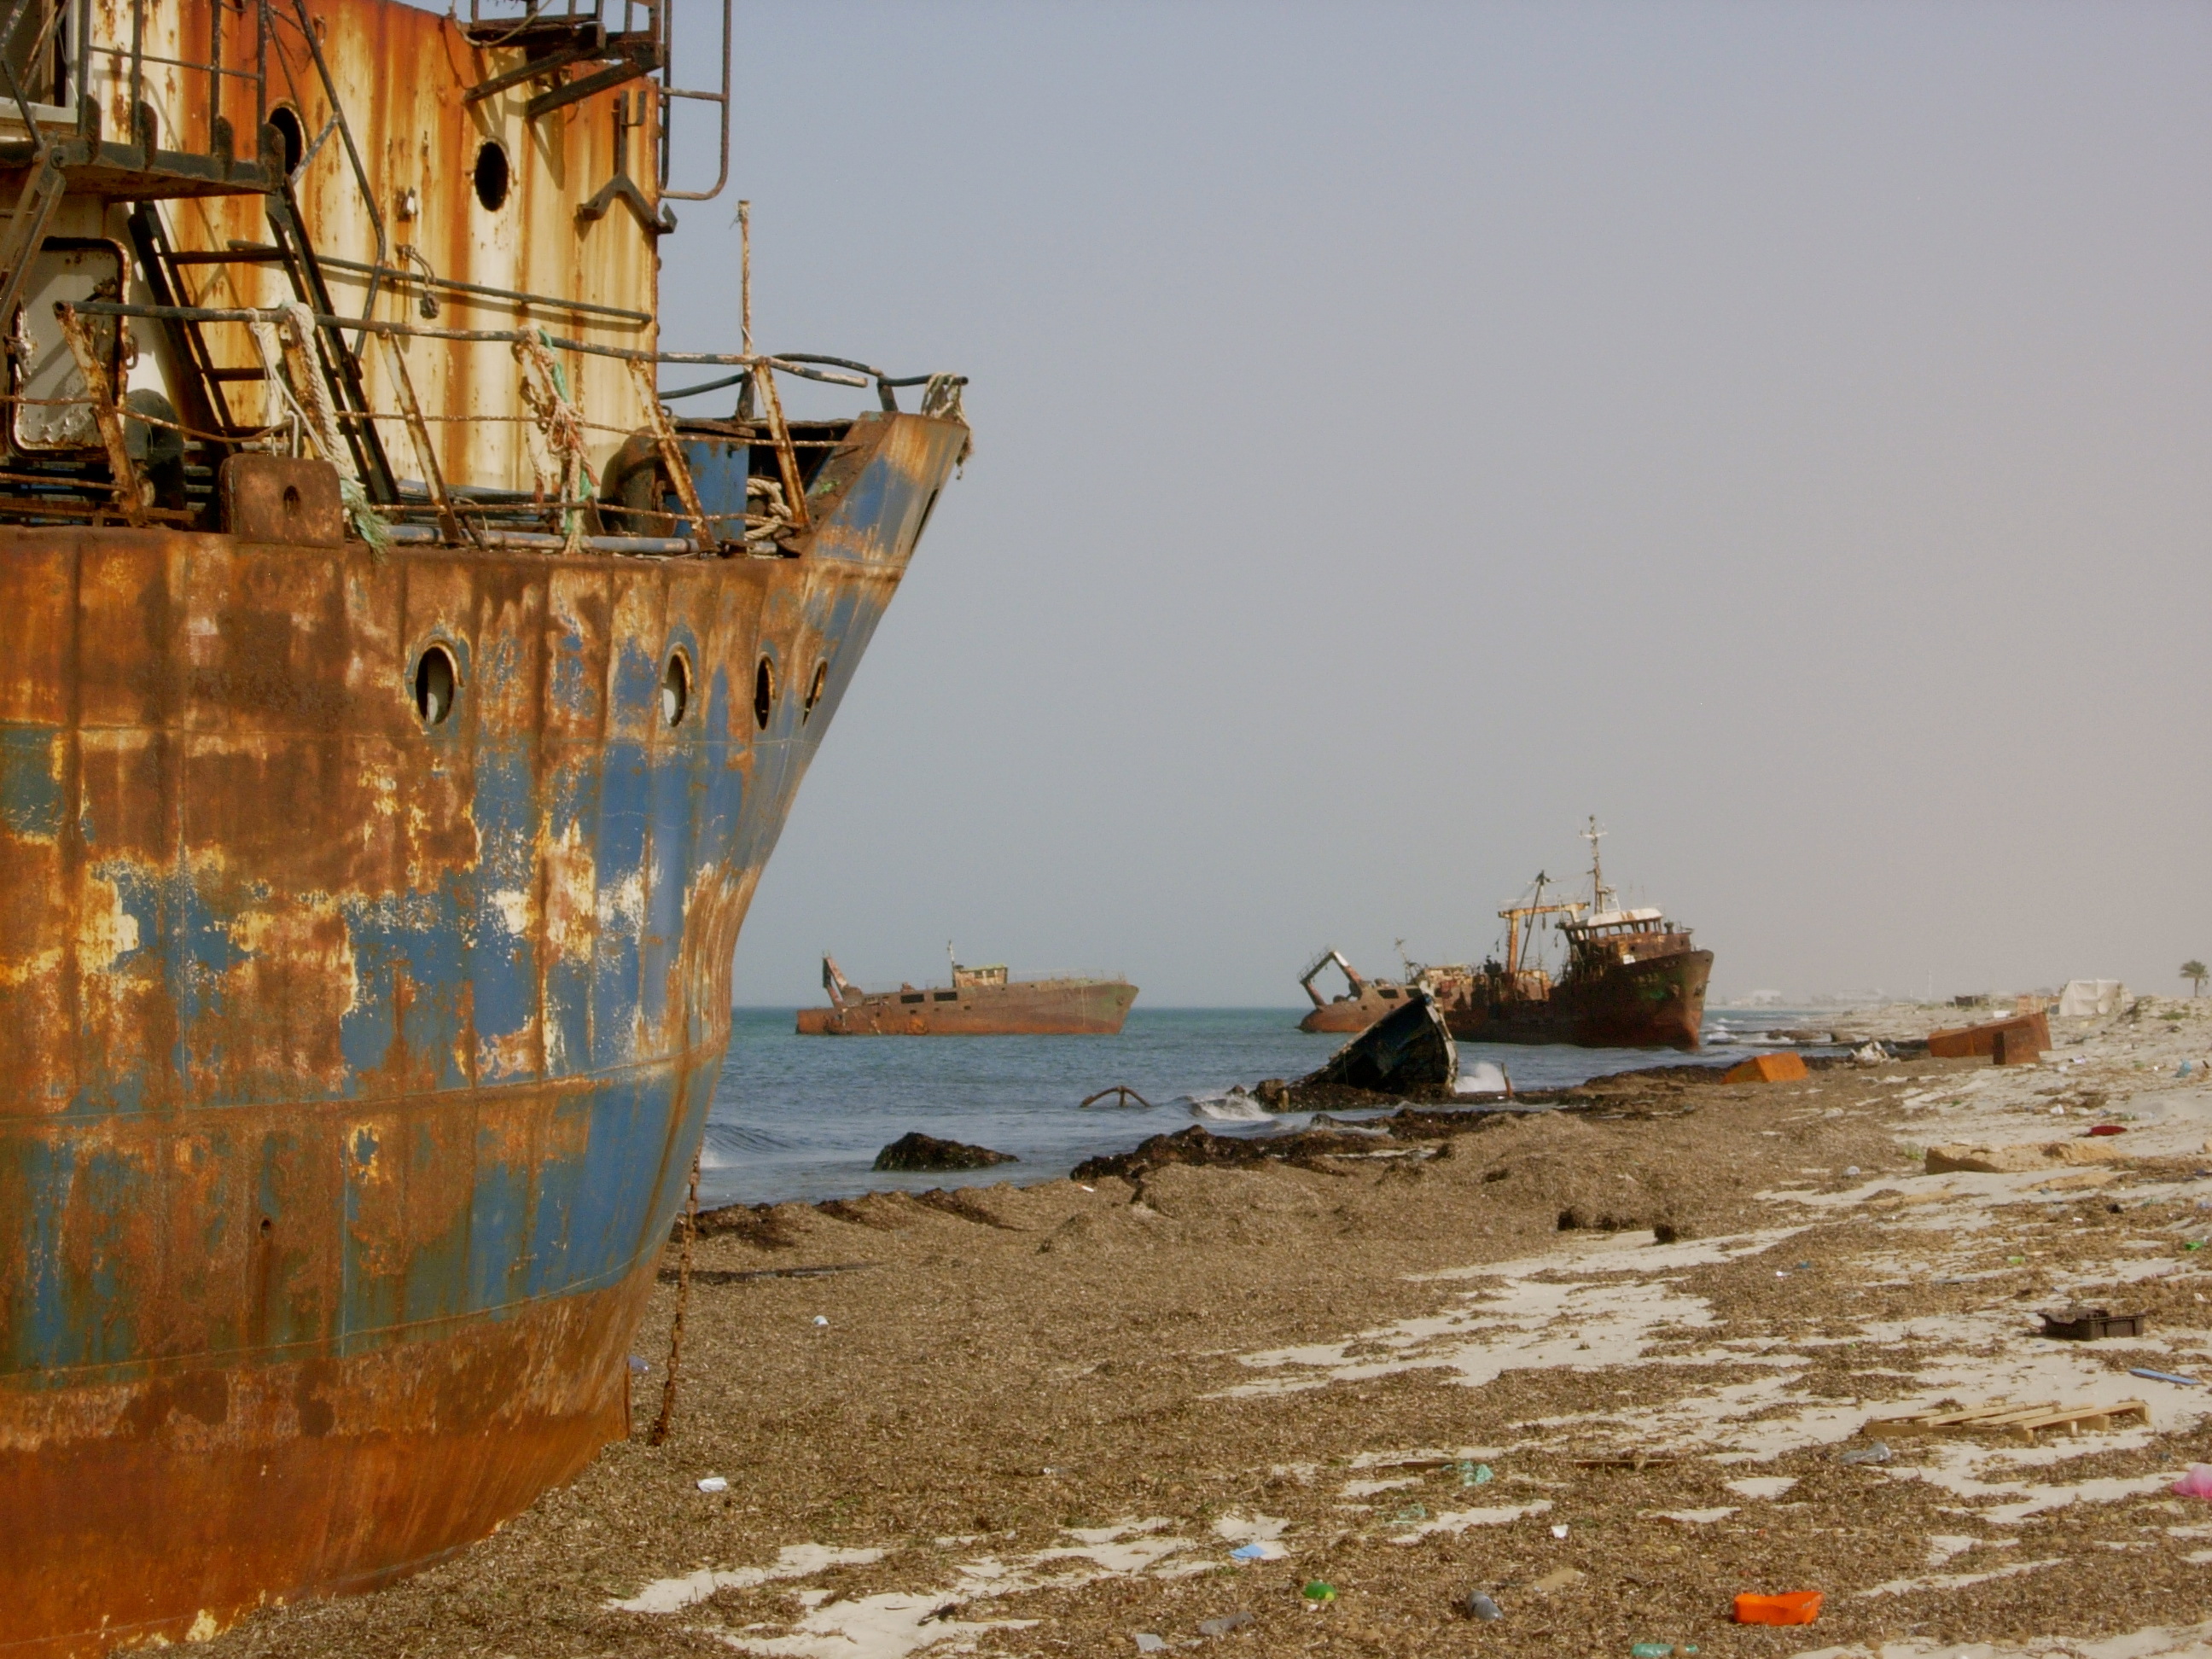 Shipwrecks on the Zuwara coast, Libya.